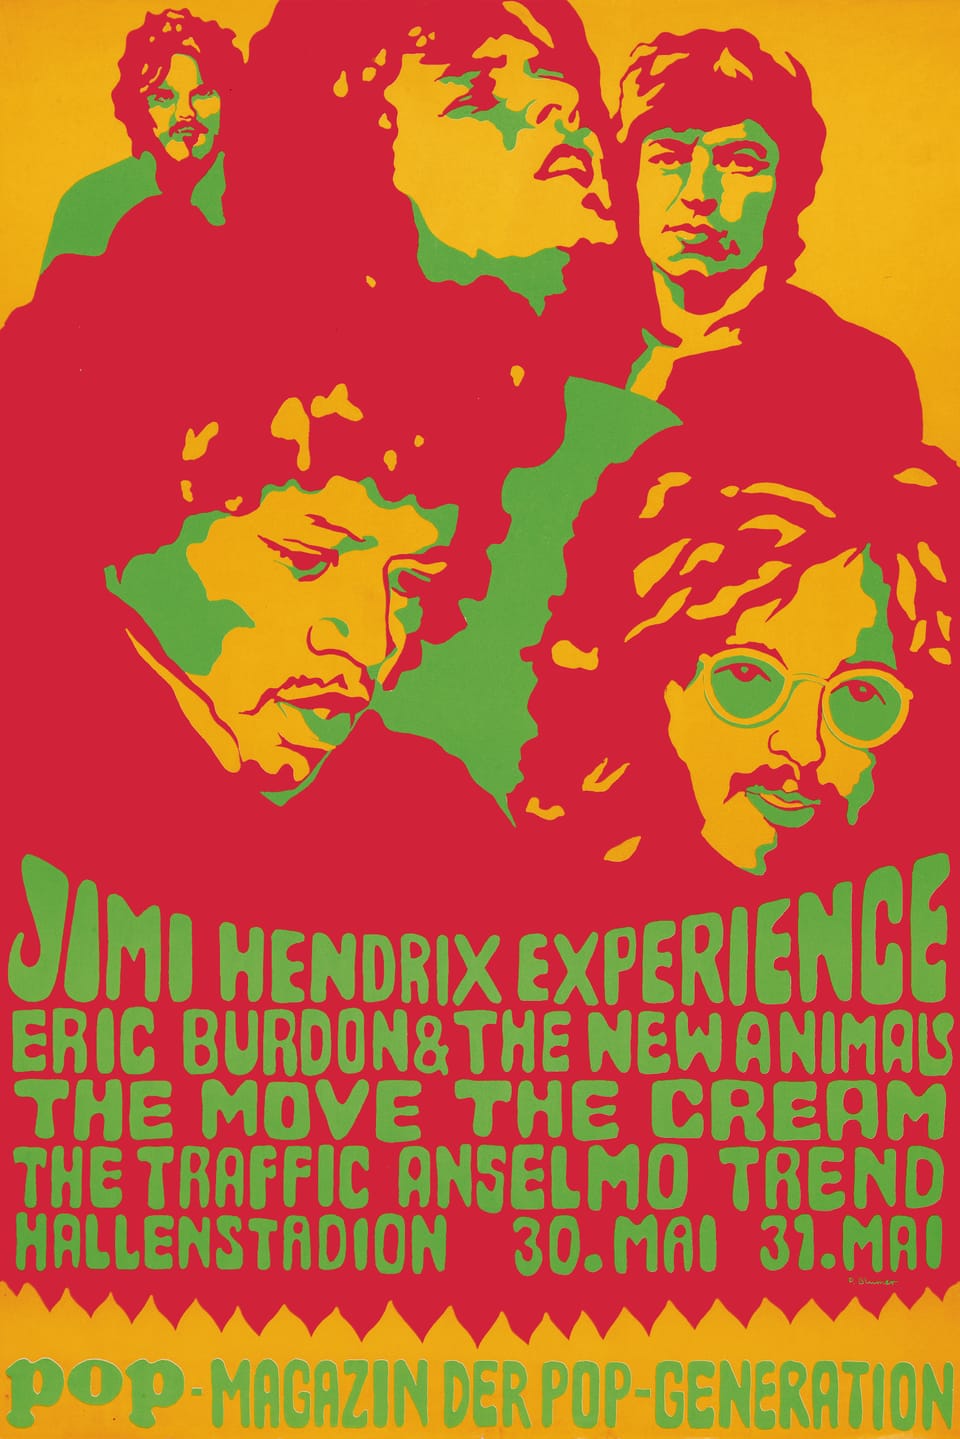 Buntes Poster im Stil der Pop-Art, auf dem unter anderen Jimi Hendrix abgebildet ist.